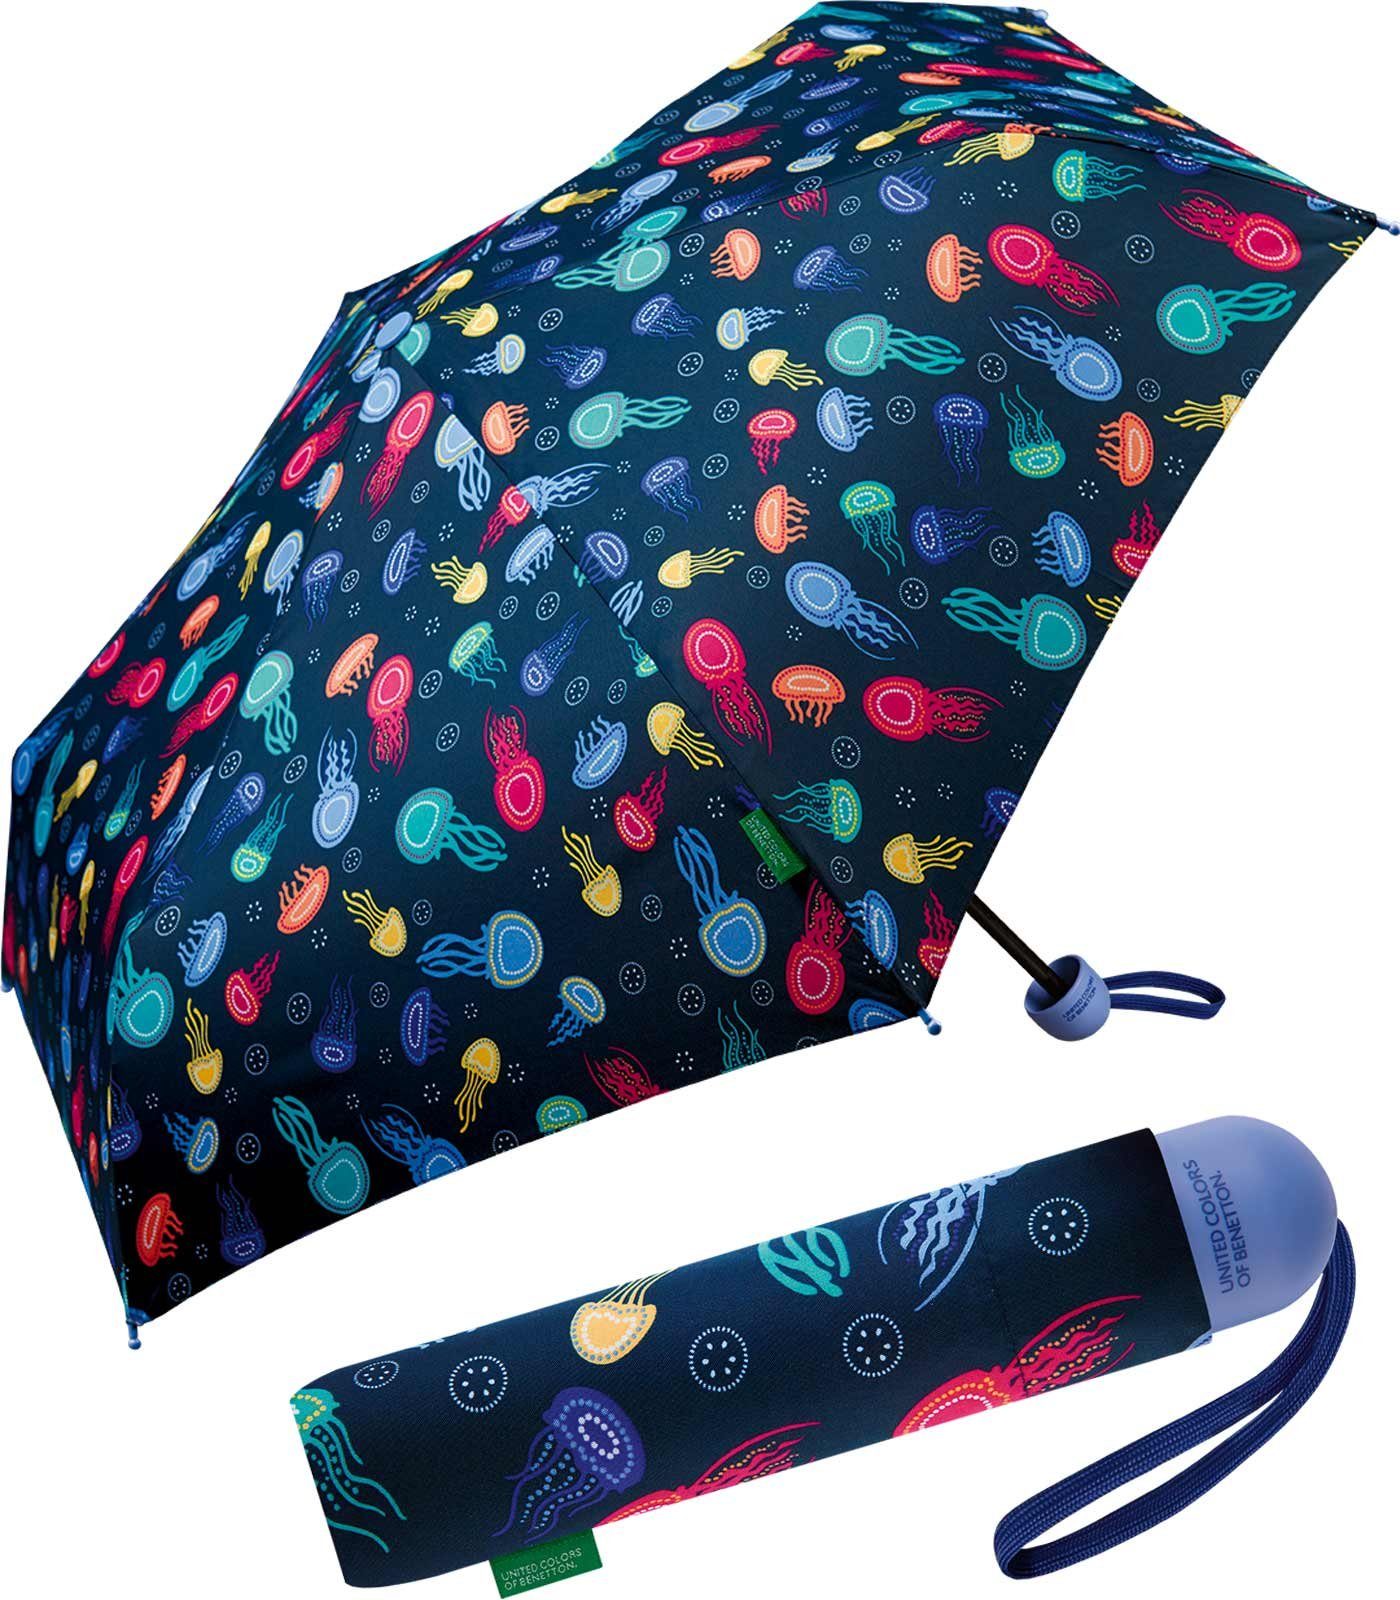 United Colors of Benetton Taschenregenschirm Kinderschirm mit Handöffner und buntem Dach, lustiges Quallen-Motiv für Spaß beim Regen